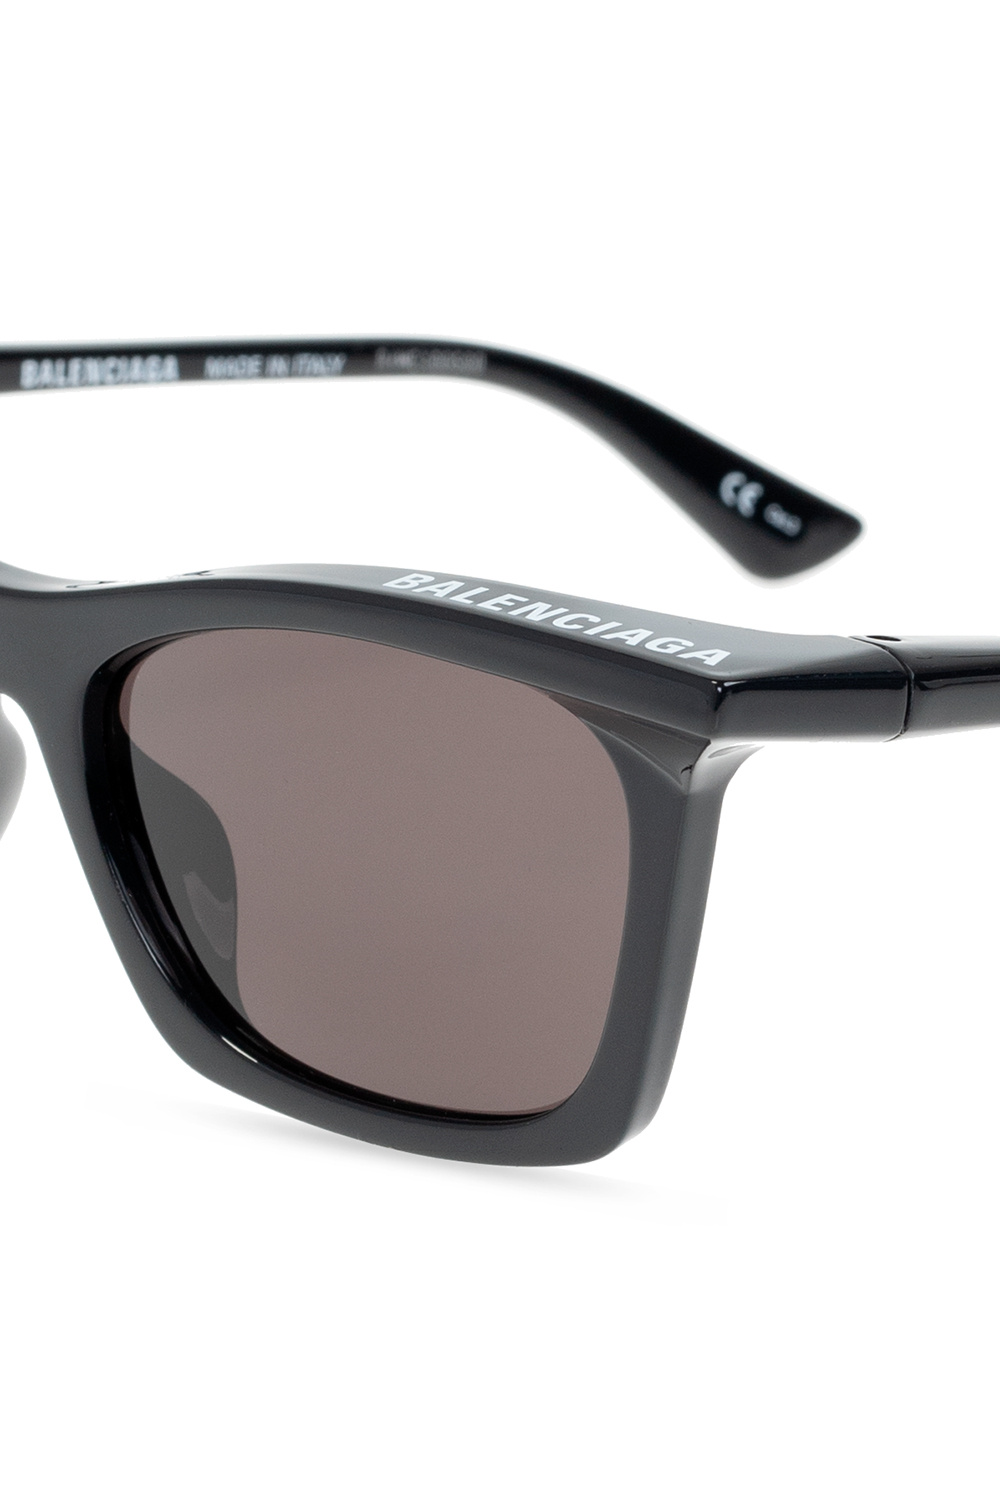 Balenciaga Sunglasses ISABEL MARANT 0037 S Black